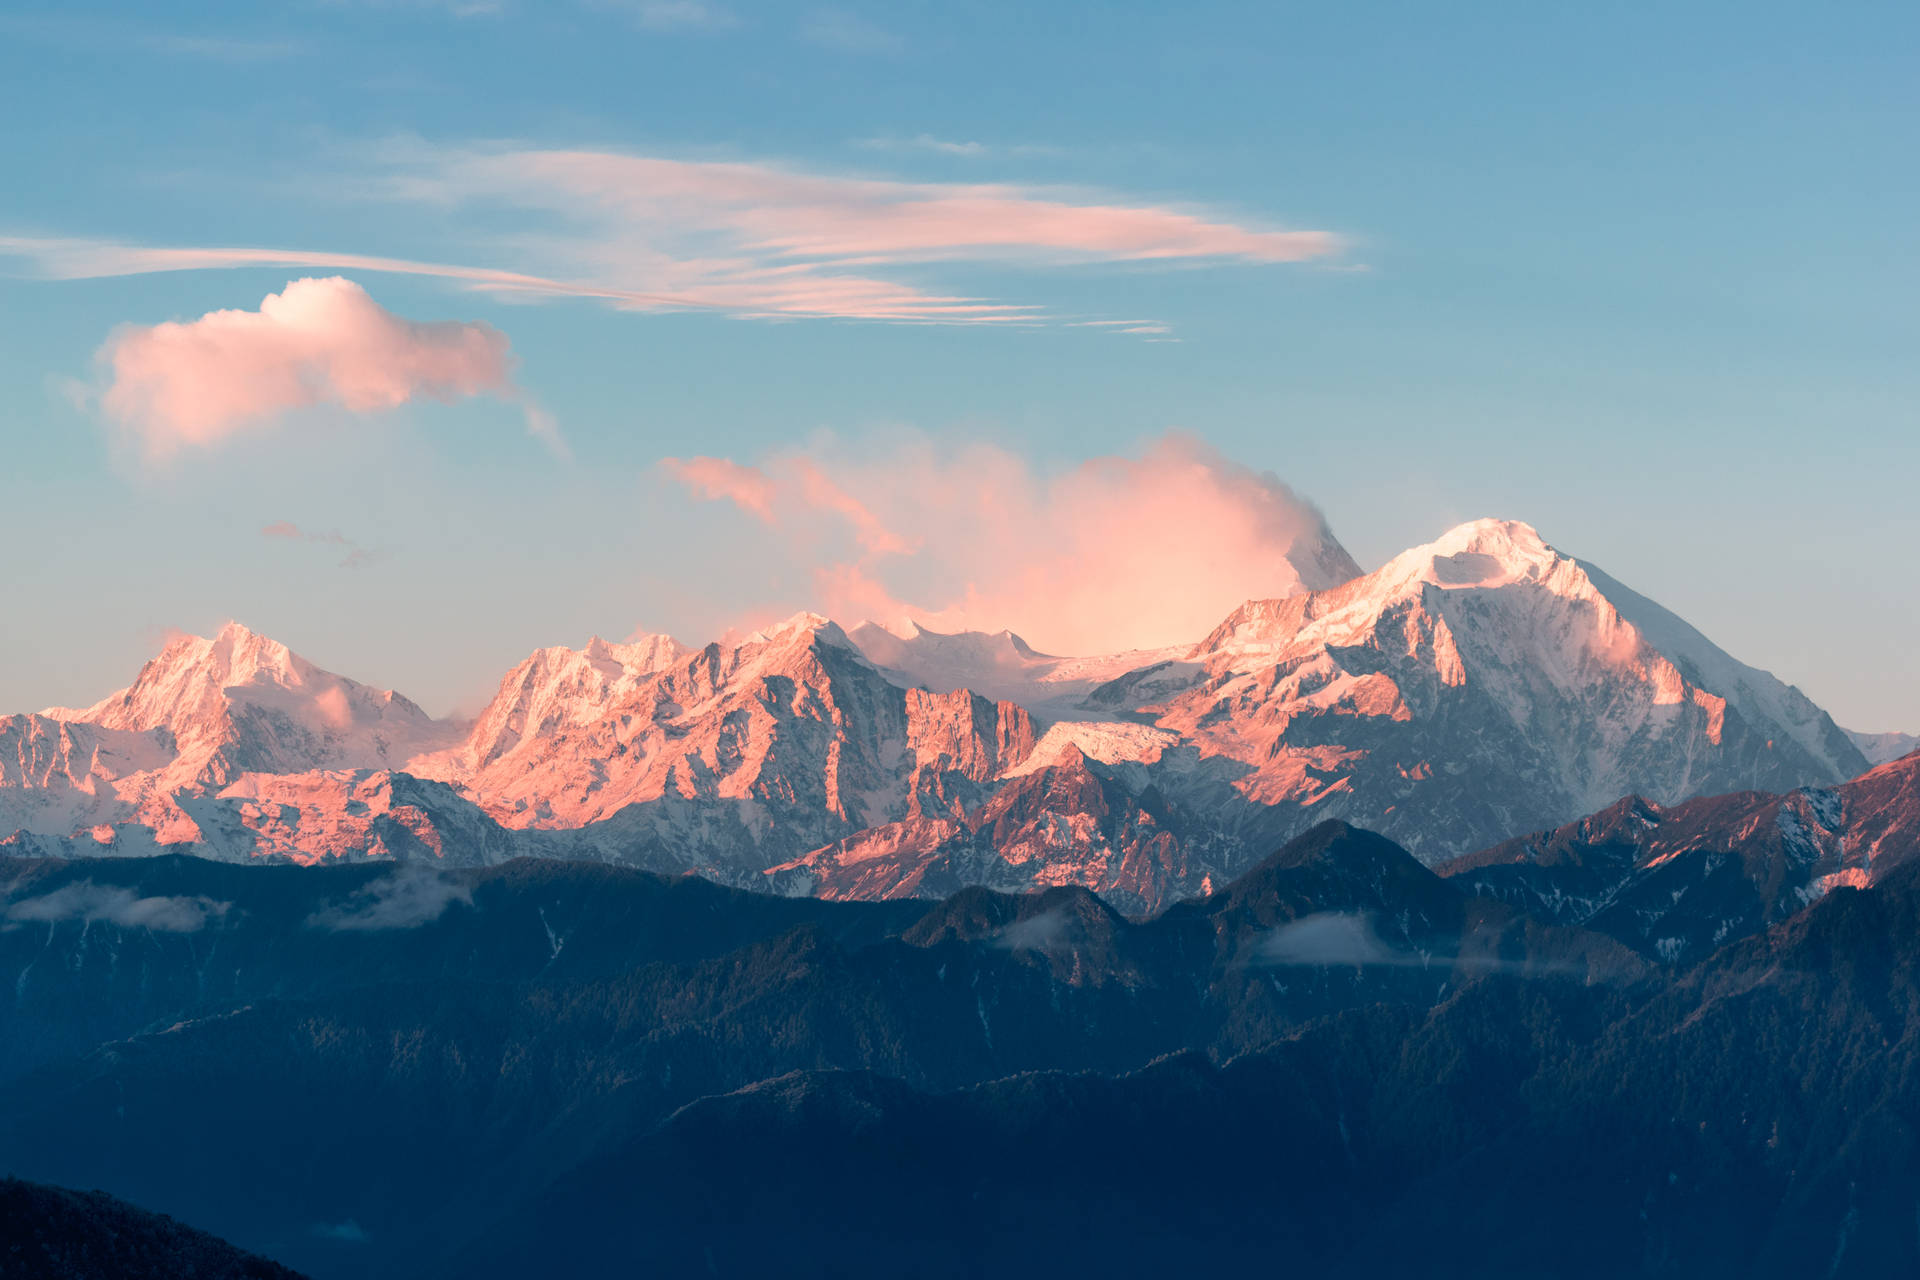 Alpenglowon Mountain Peaks SVG